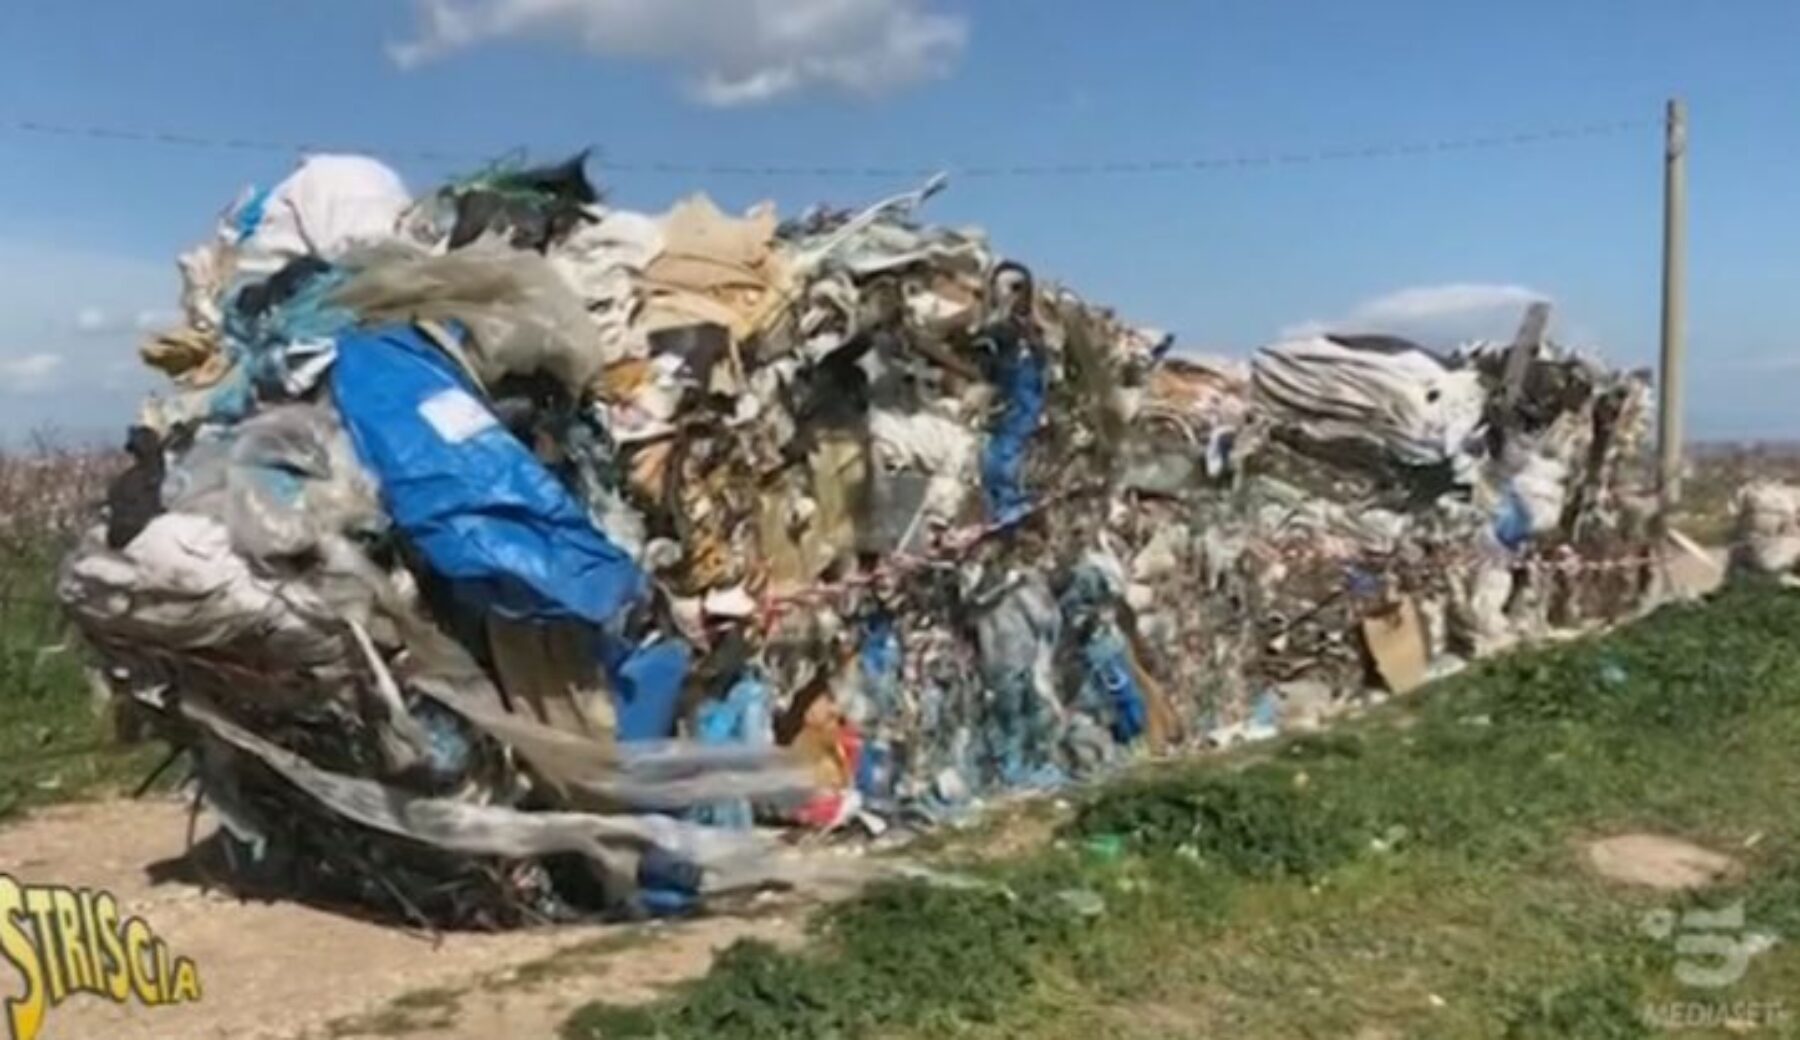 Stornarella: i rifiuti abbandonati verranno rimossi